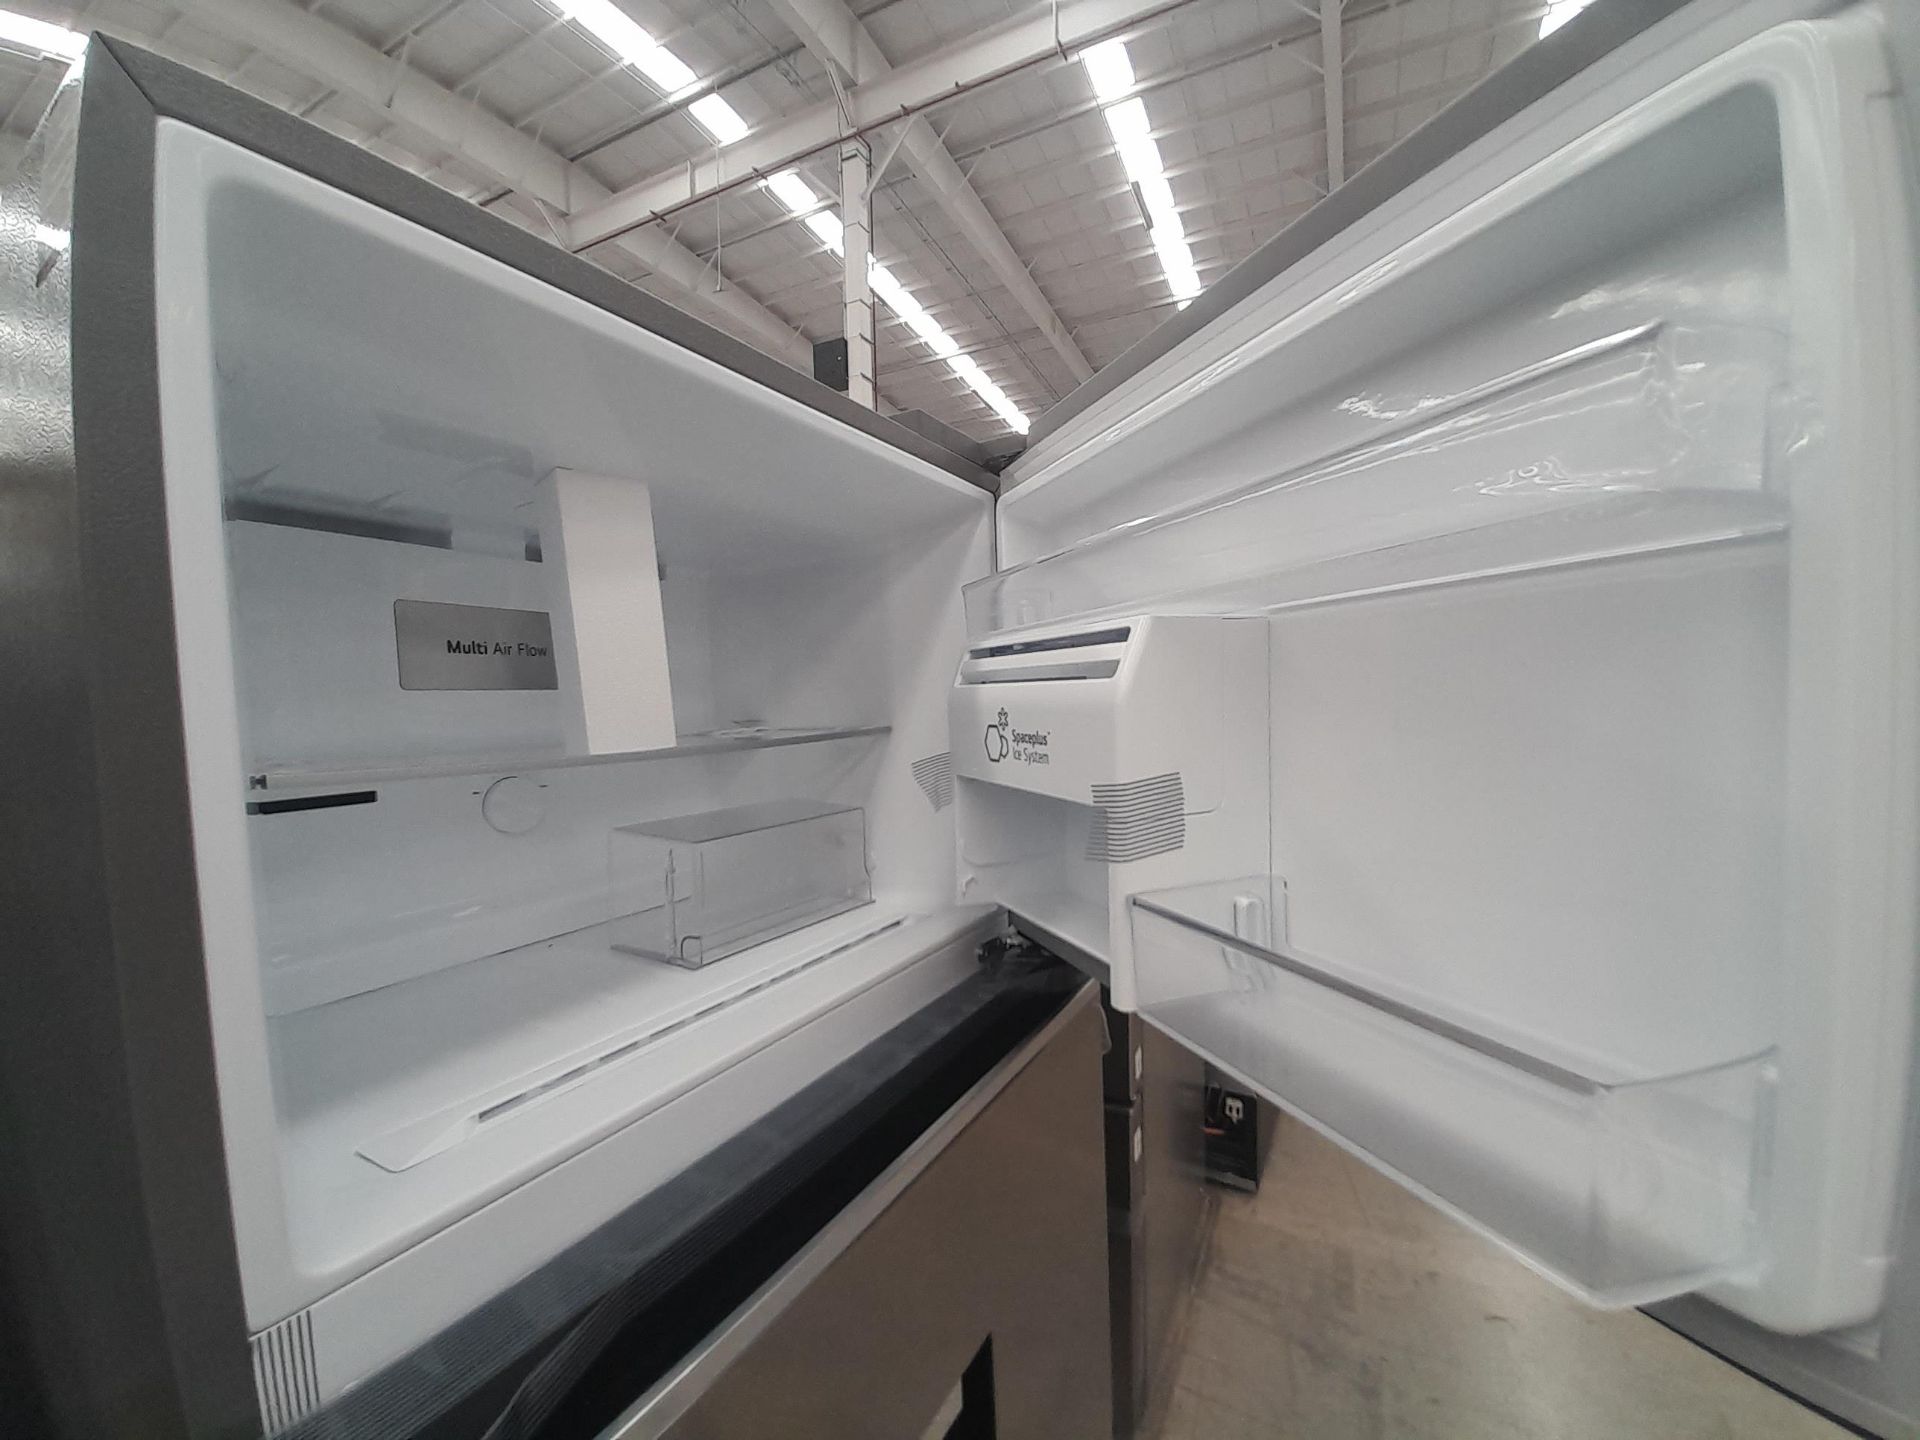 (NUEVO) Lote de 1 Refrigerador con dispensador de agua Marca LG, Modelo VT40AWP, Serie Y2P502, Colo - Image 4 of 6